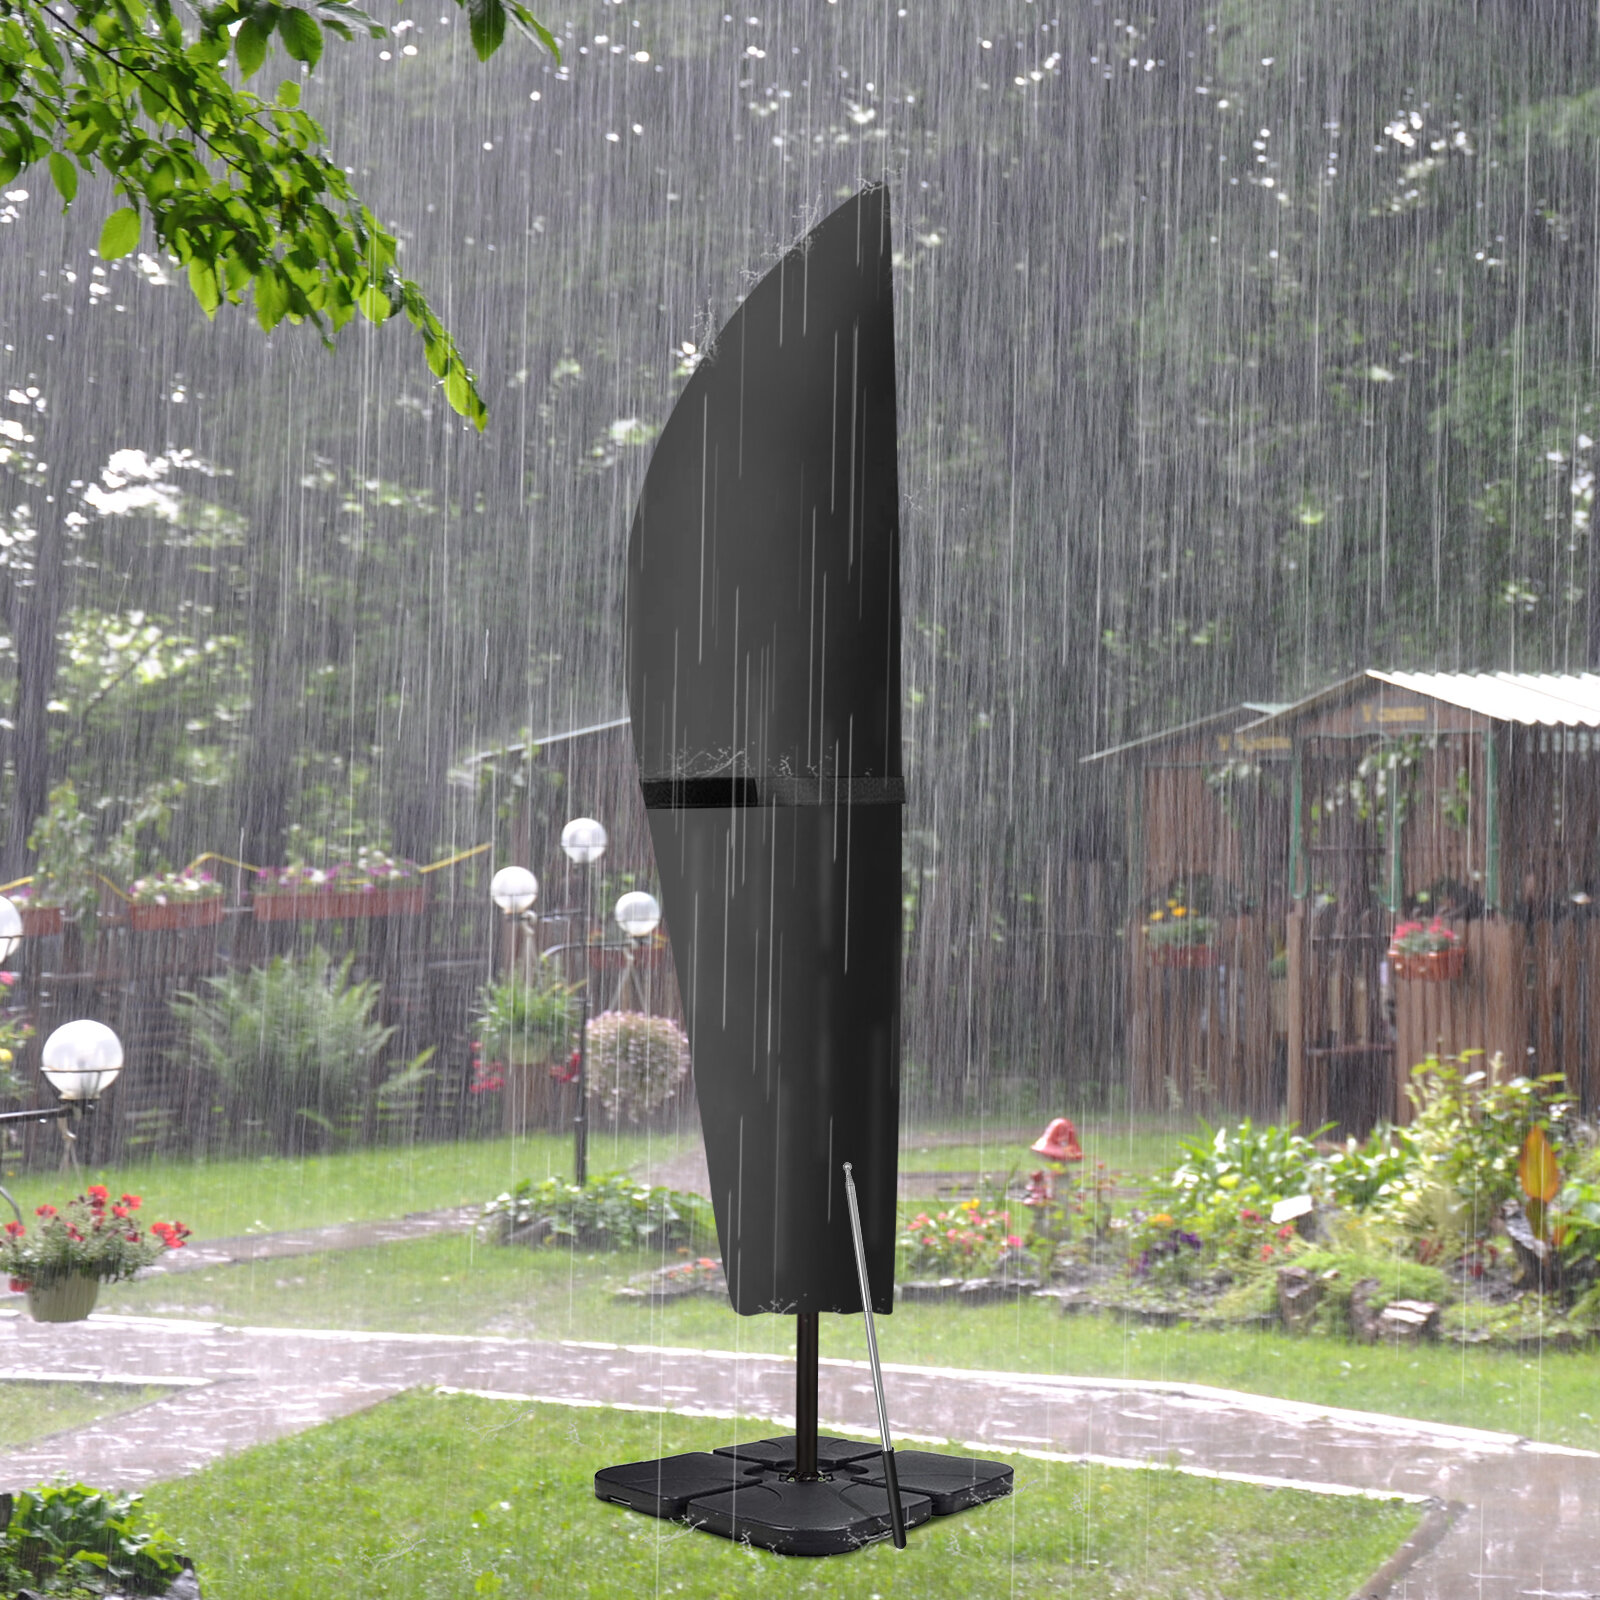 KING DO WAY Outdoor Regenschirmhülle 420D Oxford Tuch lichtbeständige wasserdichte Regenschirmhülle